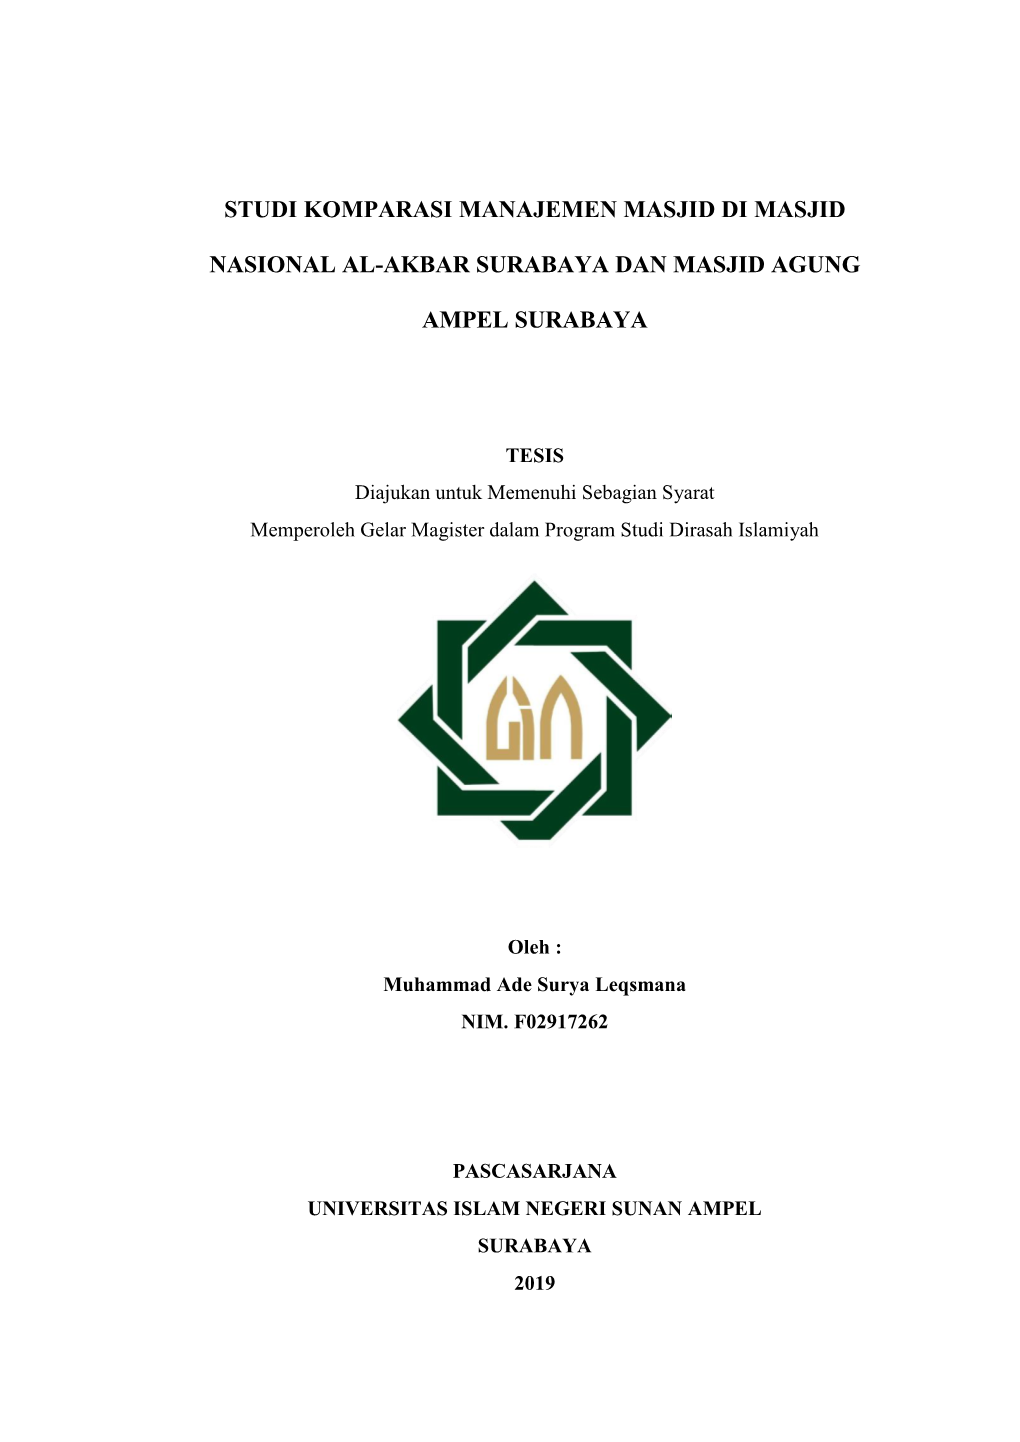 Studi Komparasi Manajemen Masjid Di Masjid Nasional Al-Akbar Surabaya Dan Masjid Agung Ampel Surabaya”